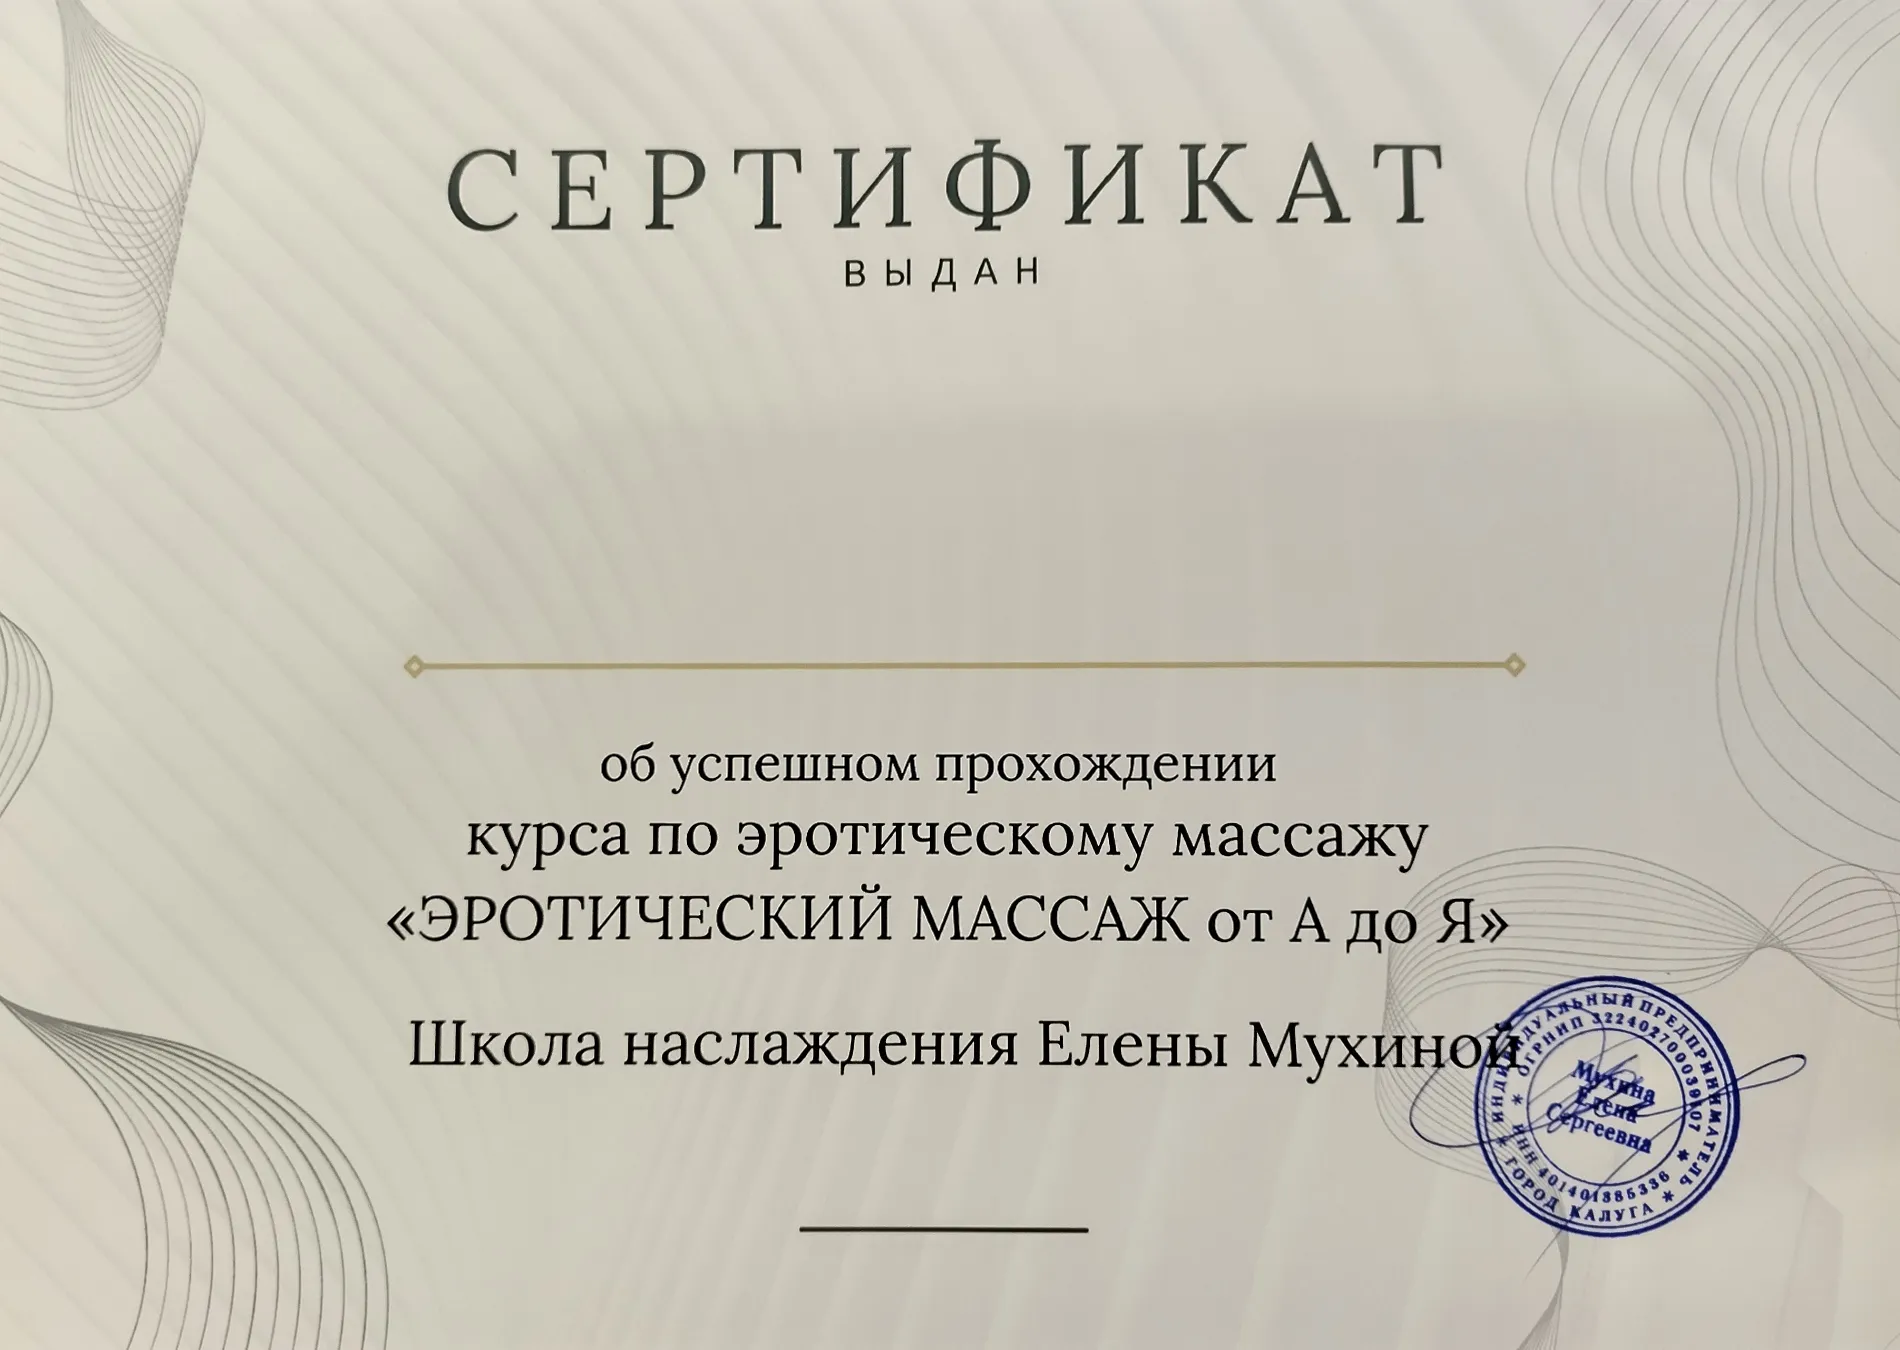 Сертификат о прохождении курса Эротический массаж от А до Я